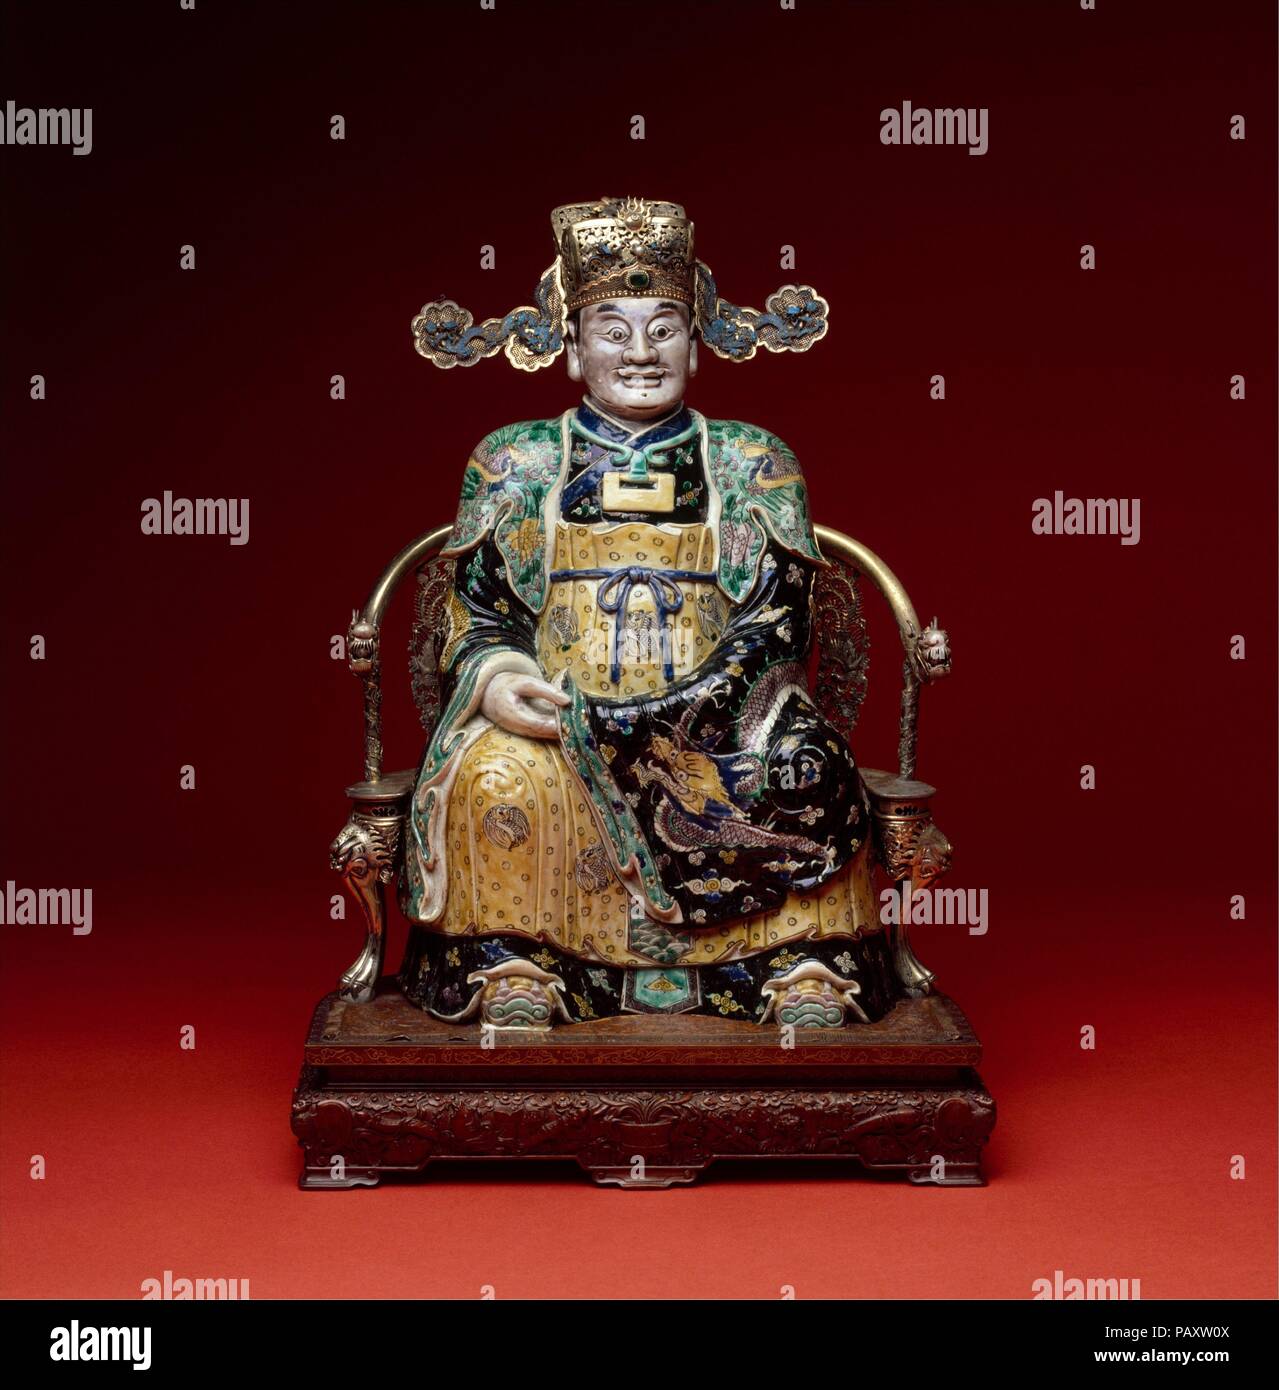 La figure, peut-être le Dieu de la richesse dans son aspect militaire. Culture : la Chine. Dimensions : H. 22 3/4 in. (57,8 cm). Date : fin 17ème-début du 18e siècle. L'identification provisoire de ce chiffre avec le dieu de la richesse est fondée sur le chapeau qu'il porte. L'un des nombreux dieux populaires en Chine, le Dieu de la richesse (Cai Shen) est pensée pour dériver d'un personnage historique qui a vécu durant la dynastie Qin (221 avant J.-C.), et plus tard a été déifié et vénéré pour son aptitude à favoriser la richesse et la bonne fortune. Musée : Metropolitan Museum of Art, New York, USA. Banque D'Images